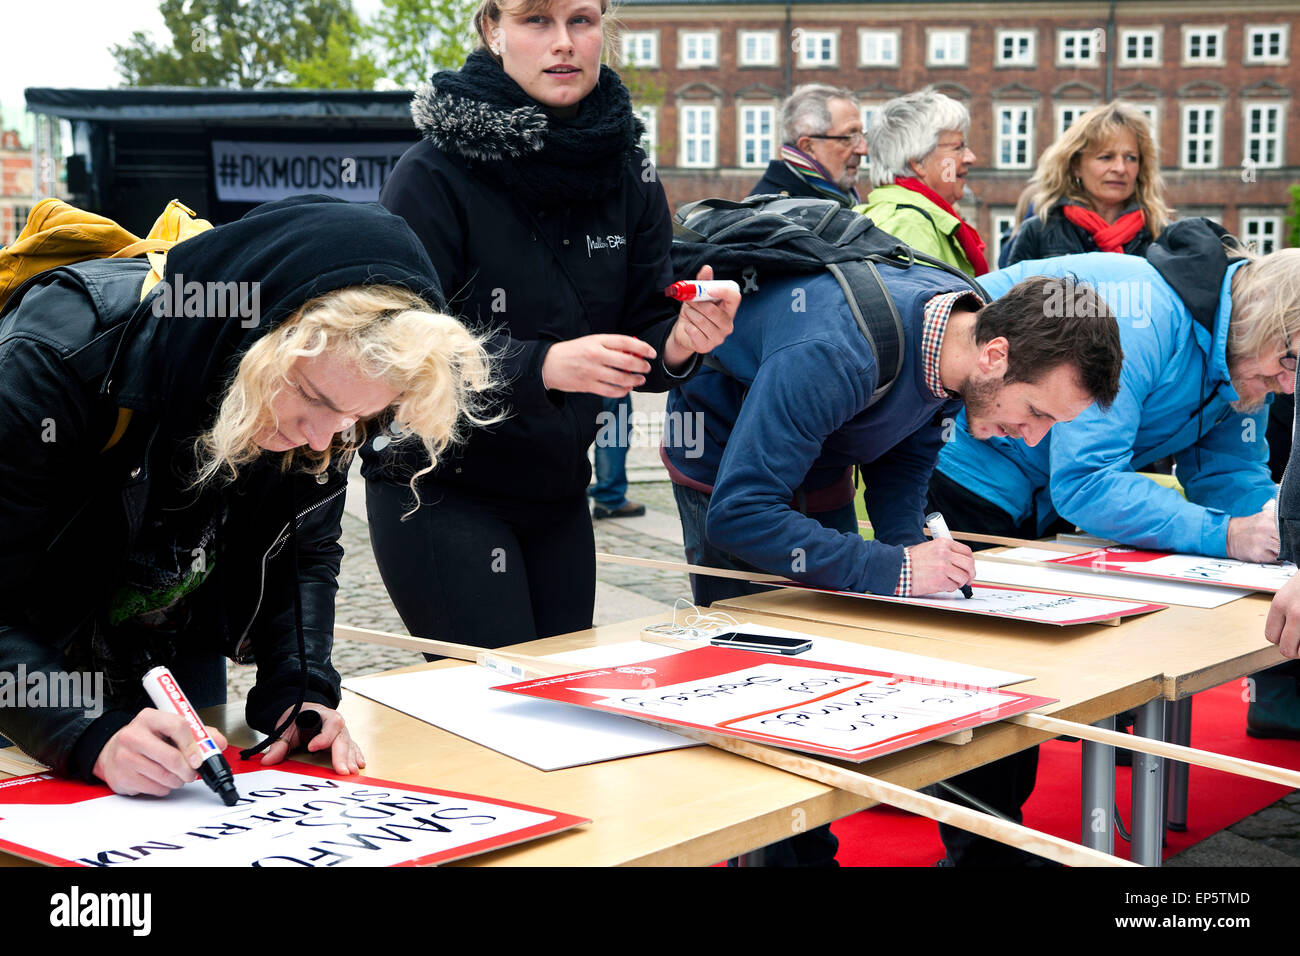 Kopenhagen, Dänemark, 13. Mai 2015: Demonstranten in ActionAid Dänemarks Kundgebung gegen Steuerhinterziehung in den 3. Weltländern machen ihre individuellen Schilder erklären, wer sie sind. Diese Demonstration ist Teil einer 5-Jahres-Kampagne in 20 Ländern wo ActionAid Credit operiert: OJPHOTOS/Alamy Live News Stockfoto